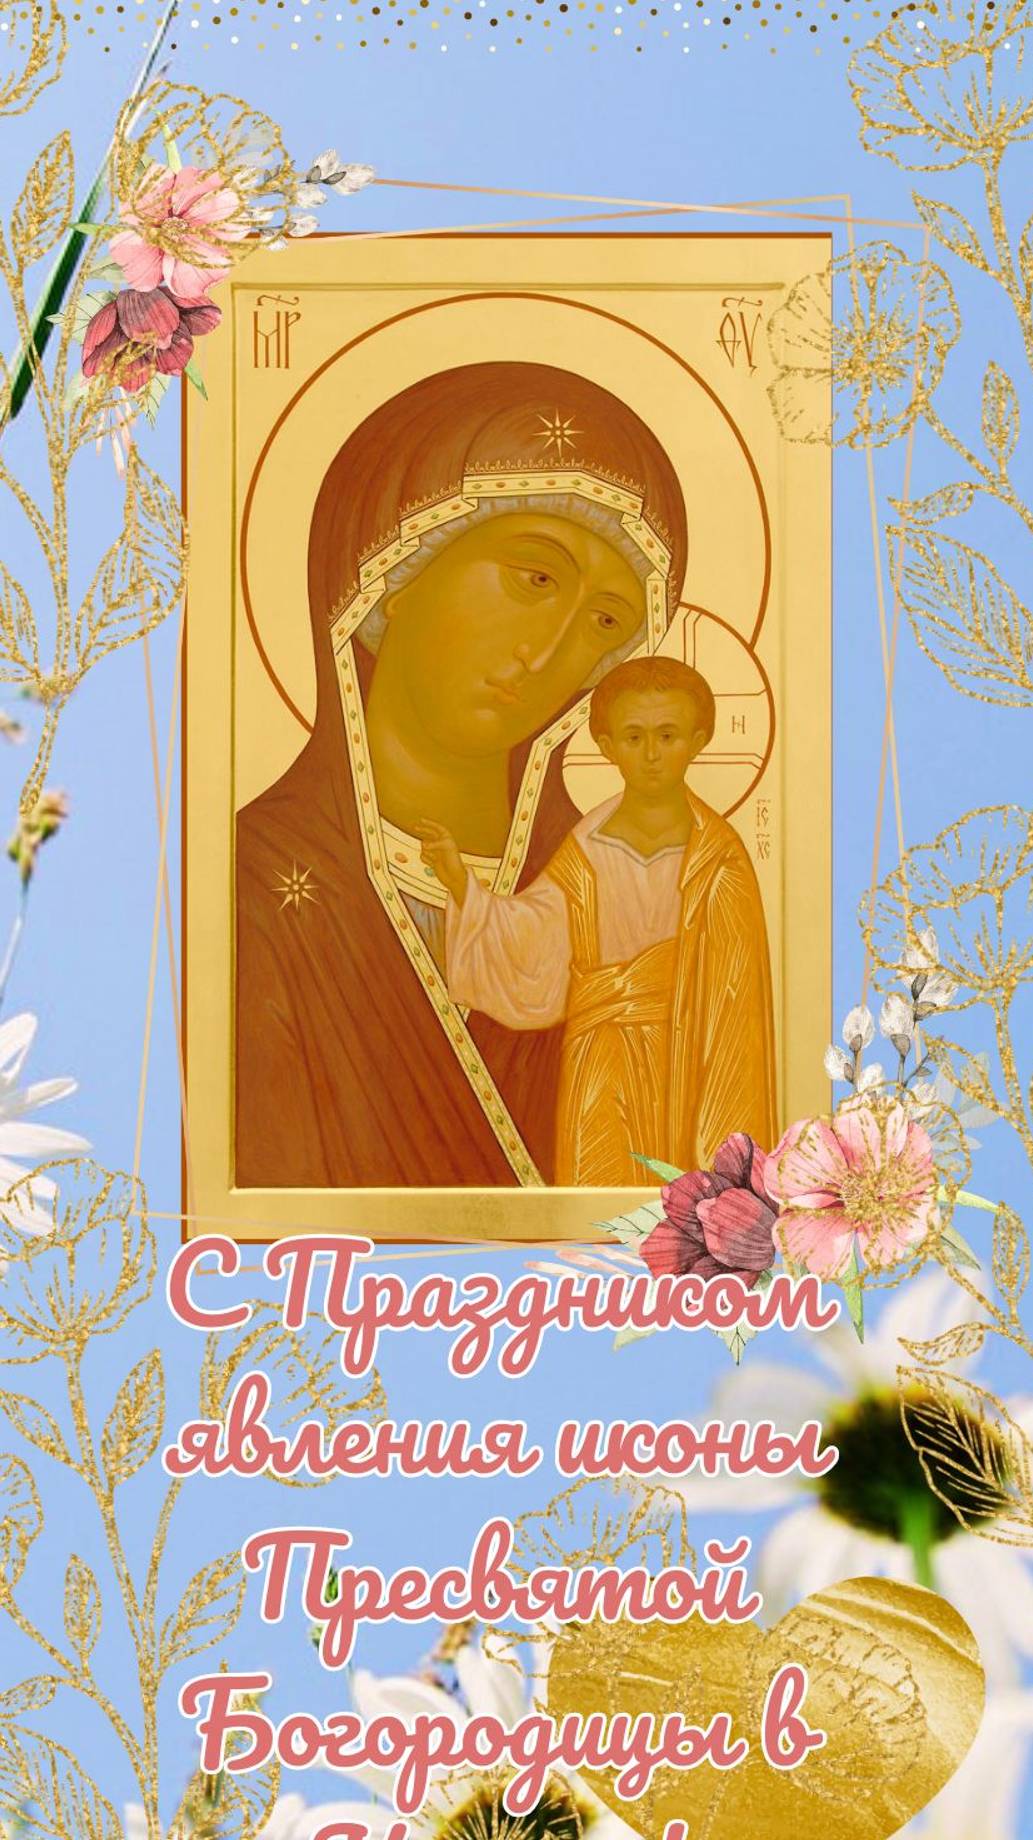 С праздником явления иконы Пресвятой Богородицы в Казани! 21 июля